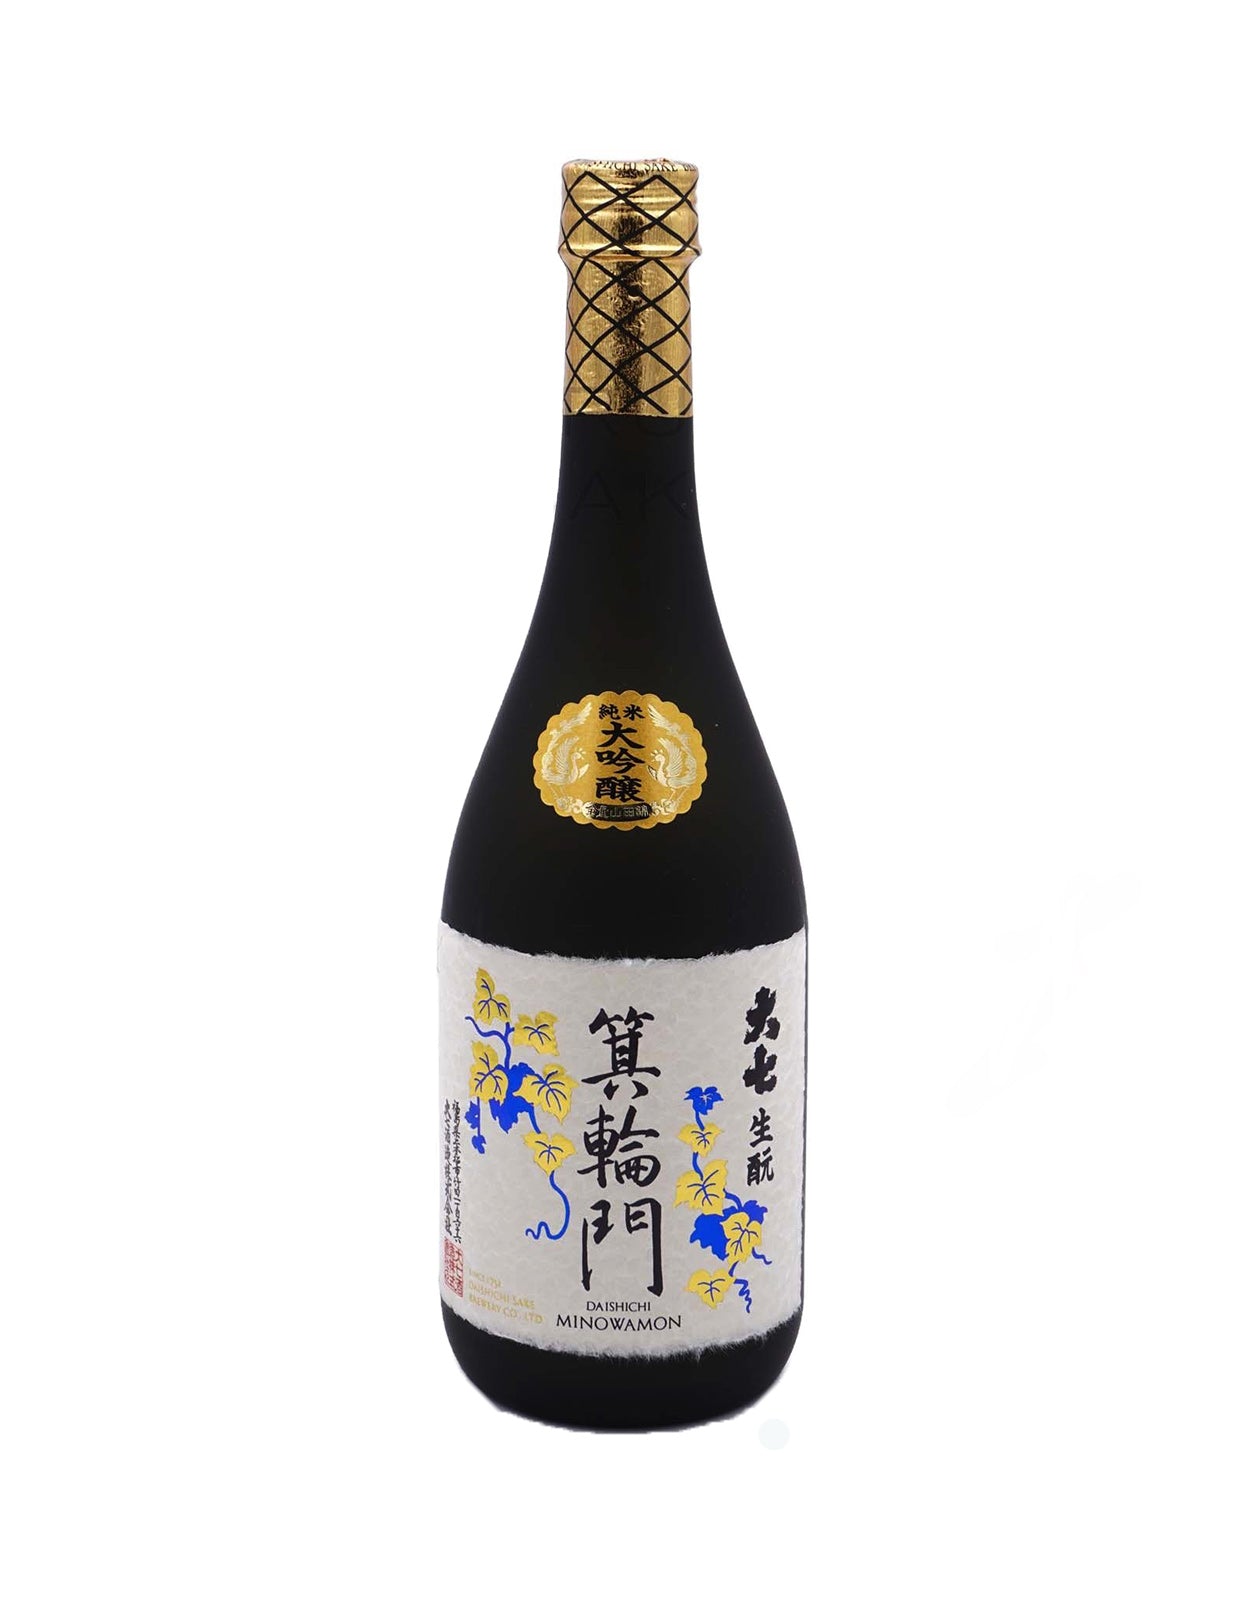 Daishichi Minowamon Kimoto Junmai Dai-Ginjo Sake - 720 ml